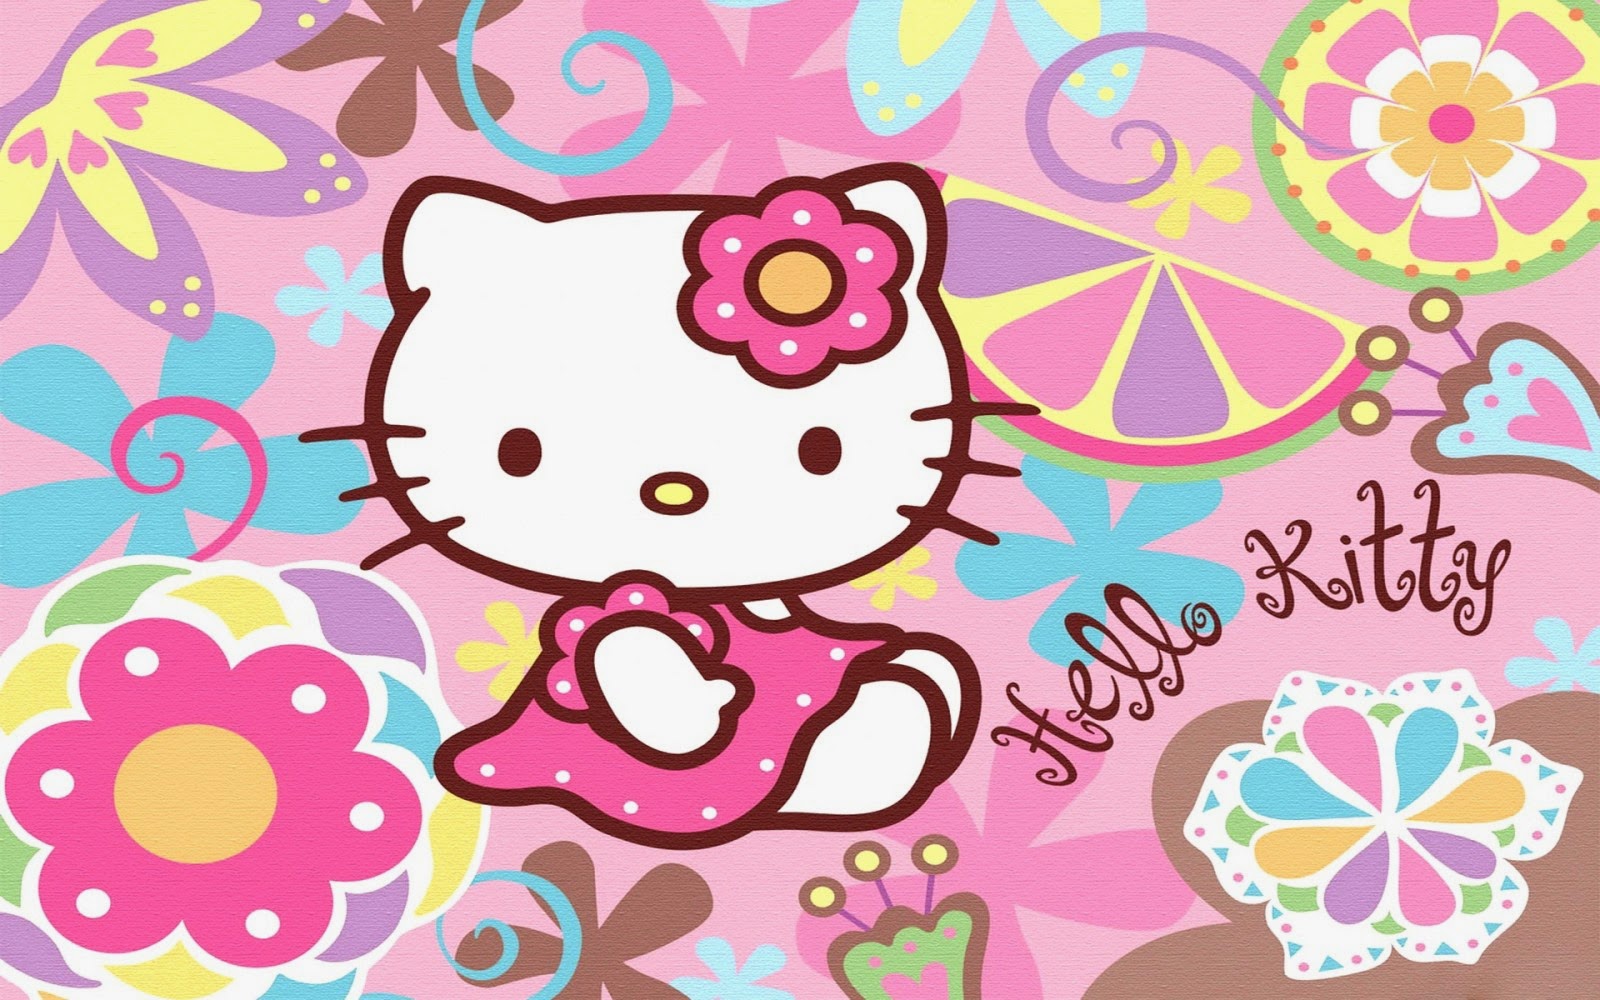 Gambar Hello Kitty